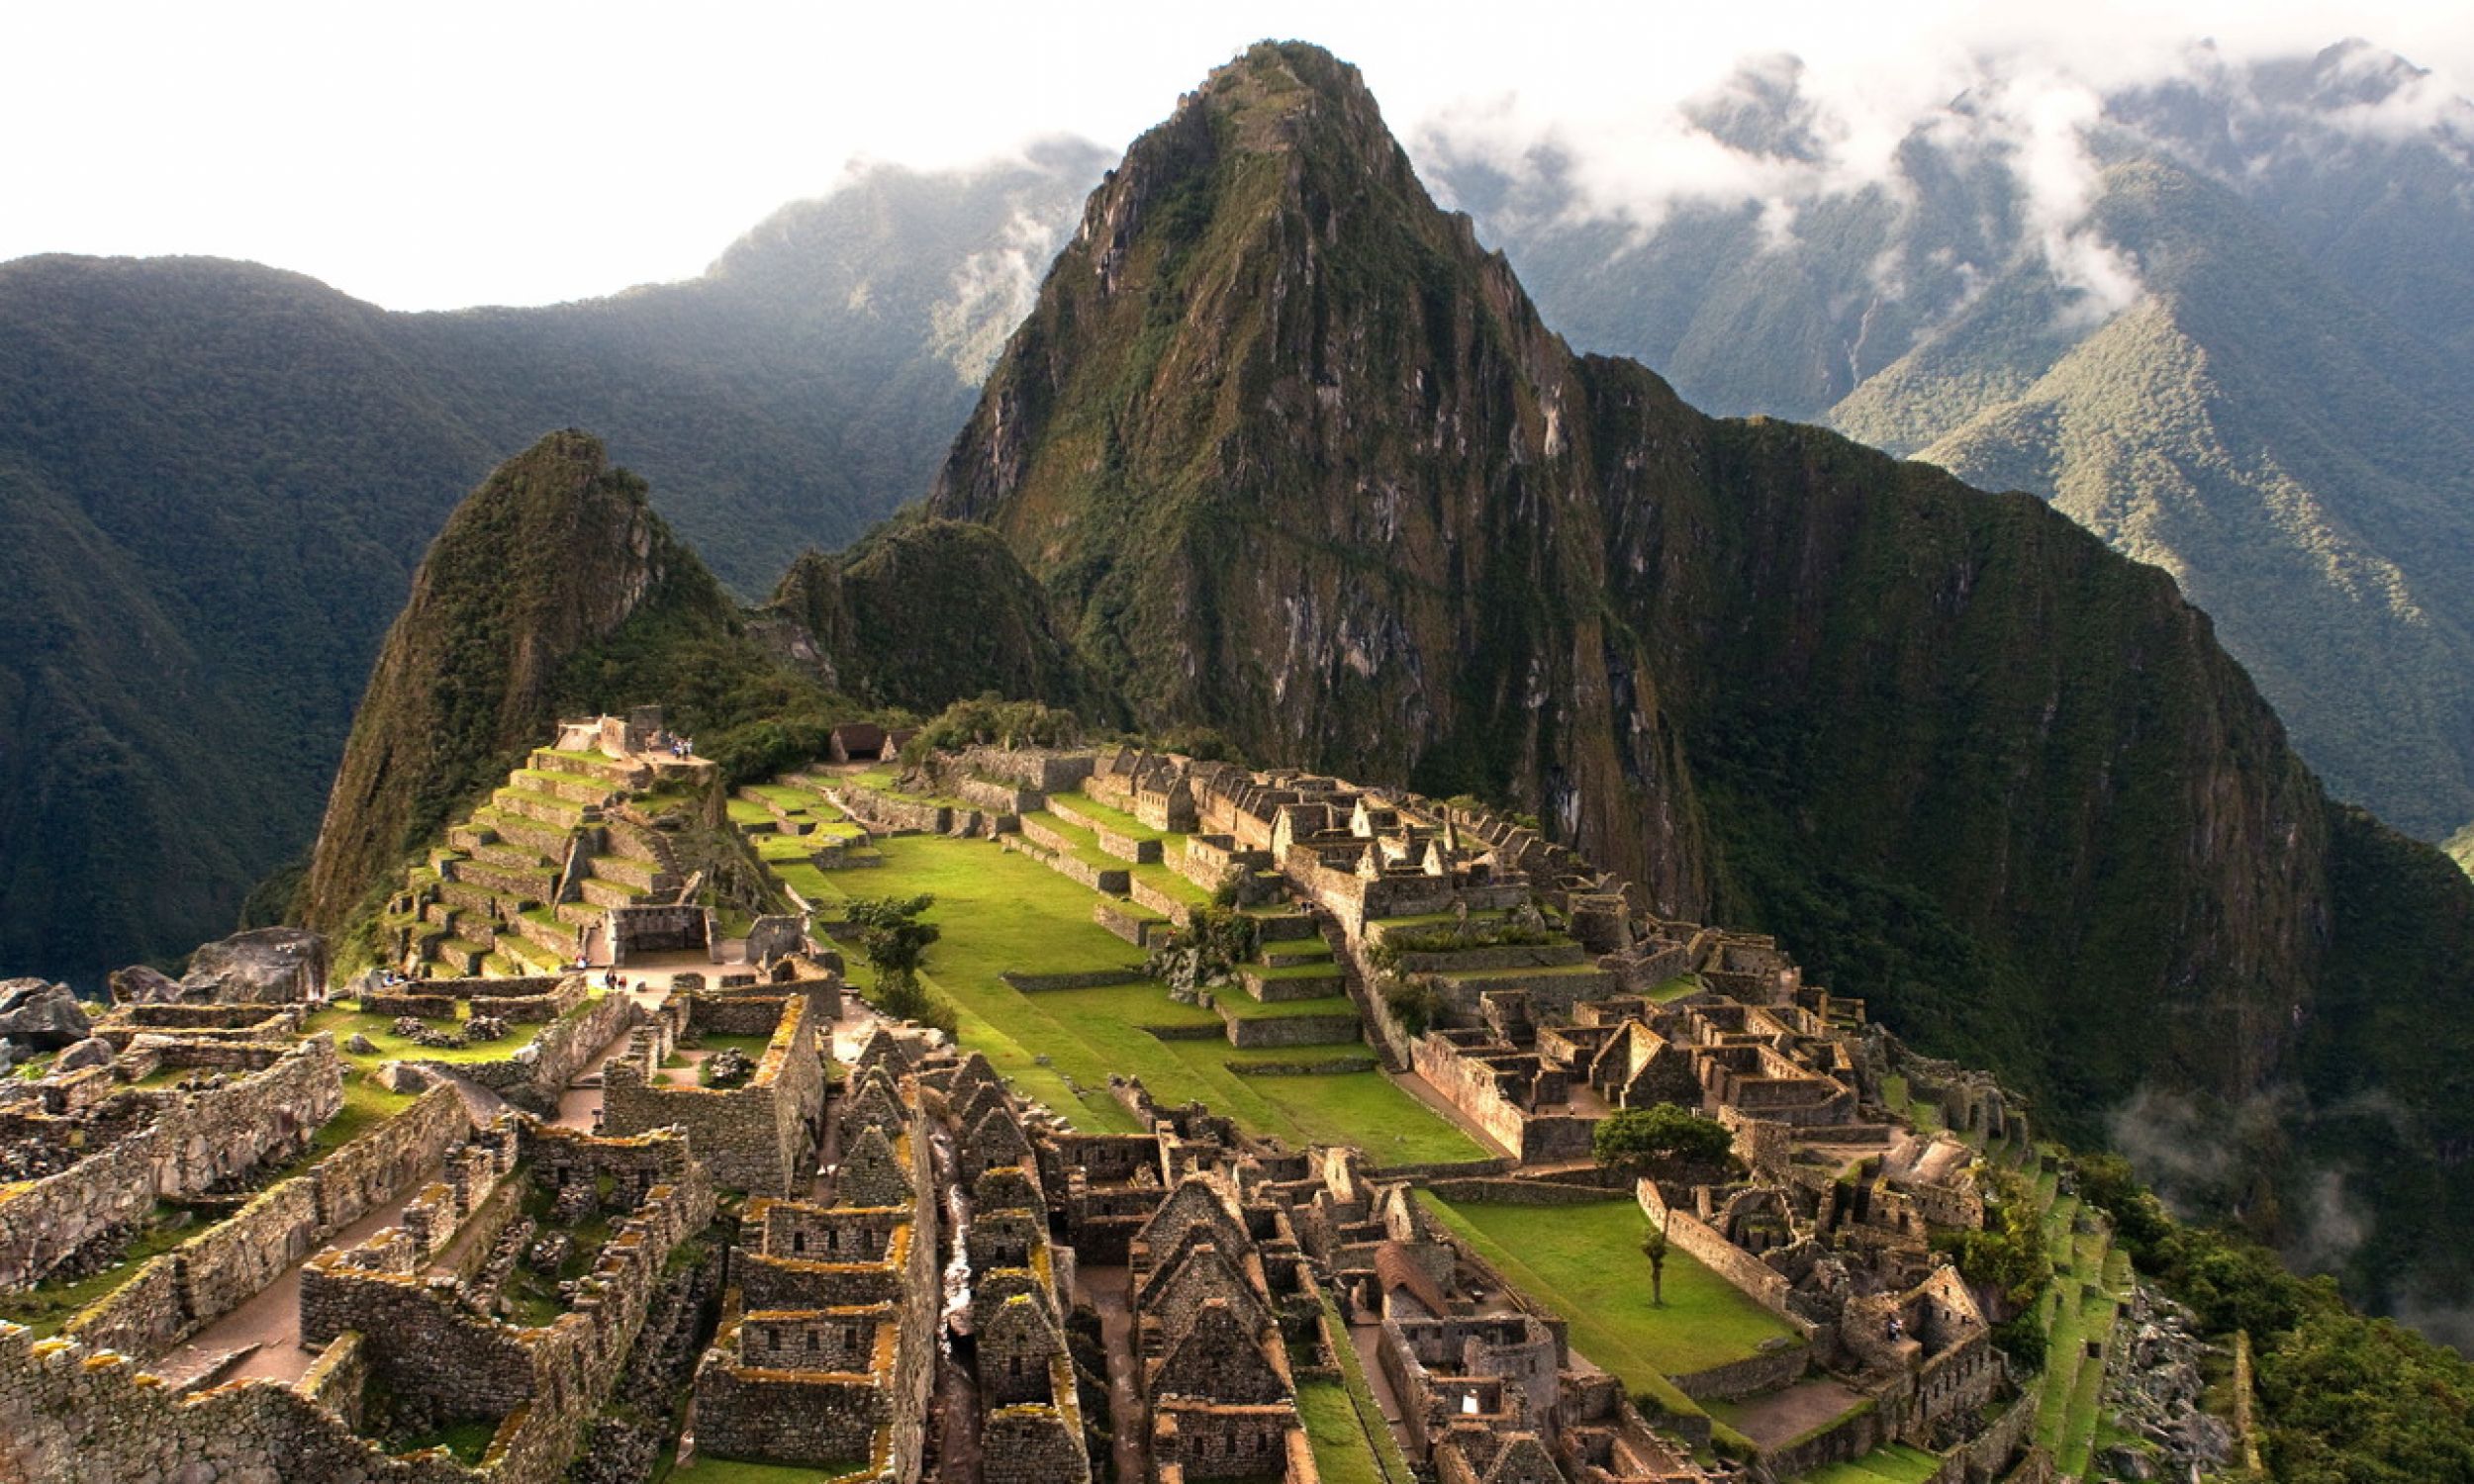 Widok na krajobraz Machu Picchu, miasto położone na wysokości 2 430 m n.p.m. w Andach we współczesnym Peru, na północny zachód od Cuzco. Okolica pokryta jest gęstym buszem. Był to prawdopodobnie najbardziej zdumiewający twór urbanistyczny Imperium Inków. Fot. PAP/Photoshot